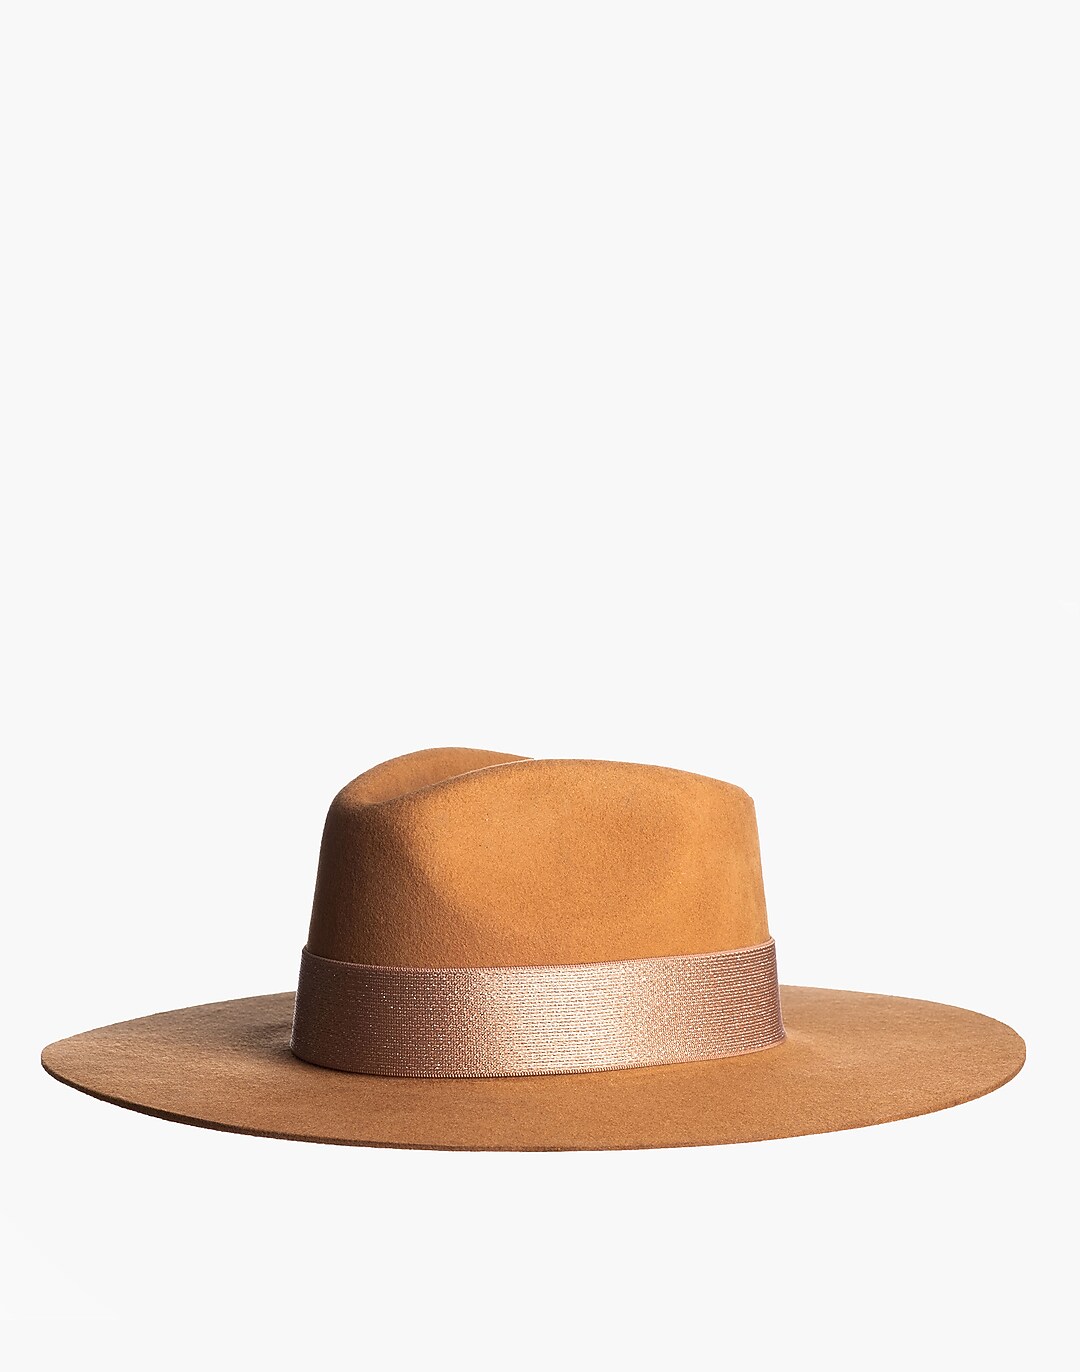 ASN Wool Felt Soleil Rancher Hat | Madewell